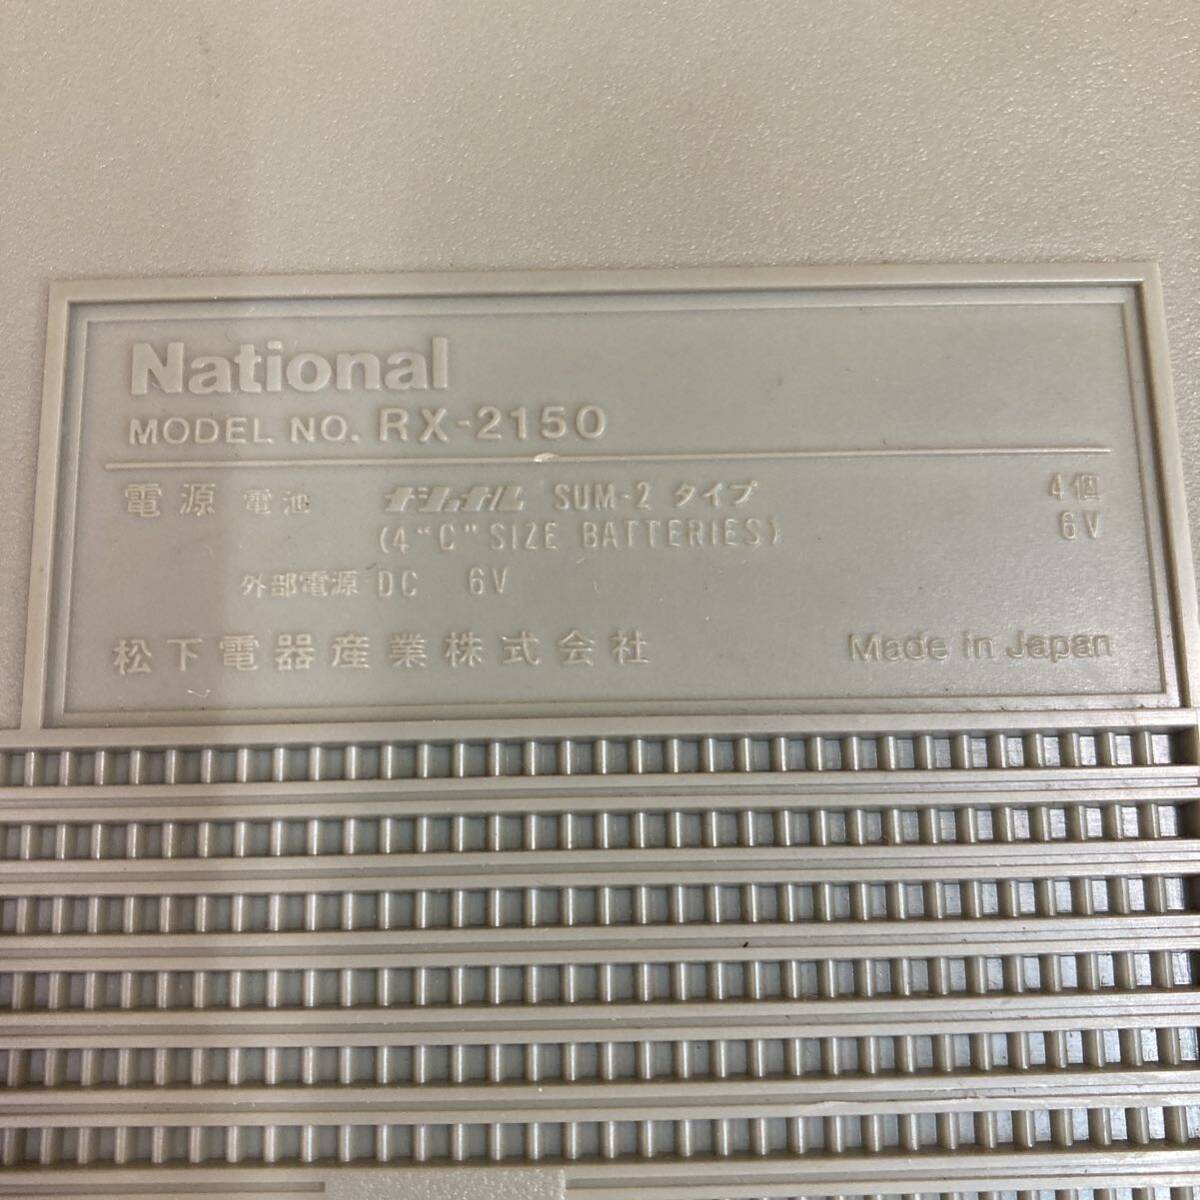 ナショナル National ポータブルラジカセ RX-2150 ジャンク品 カセットレコーダー 昭和レトロ ラジカセ ラジオ FM AM の画像5